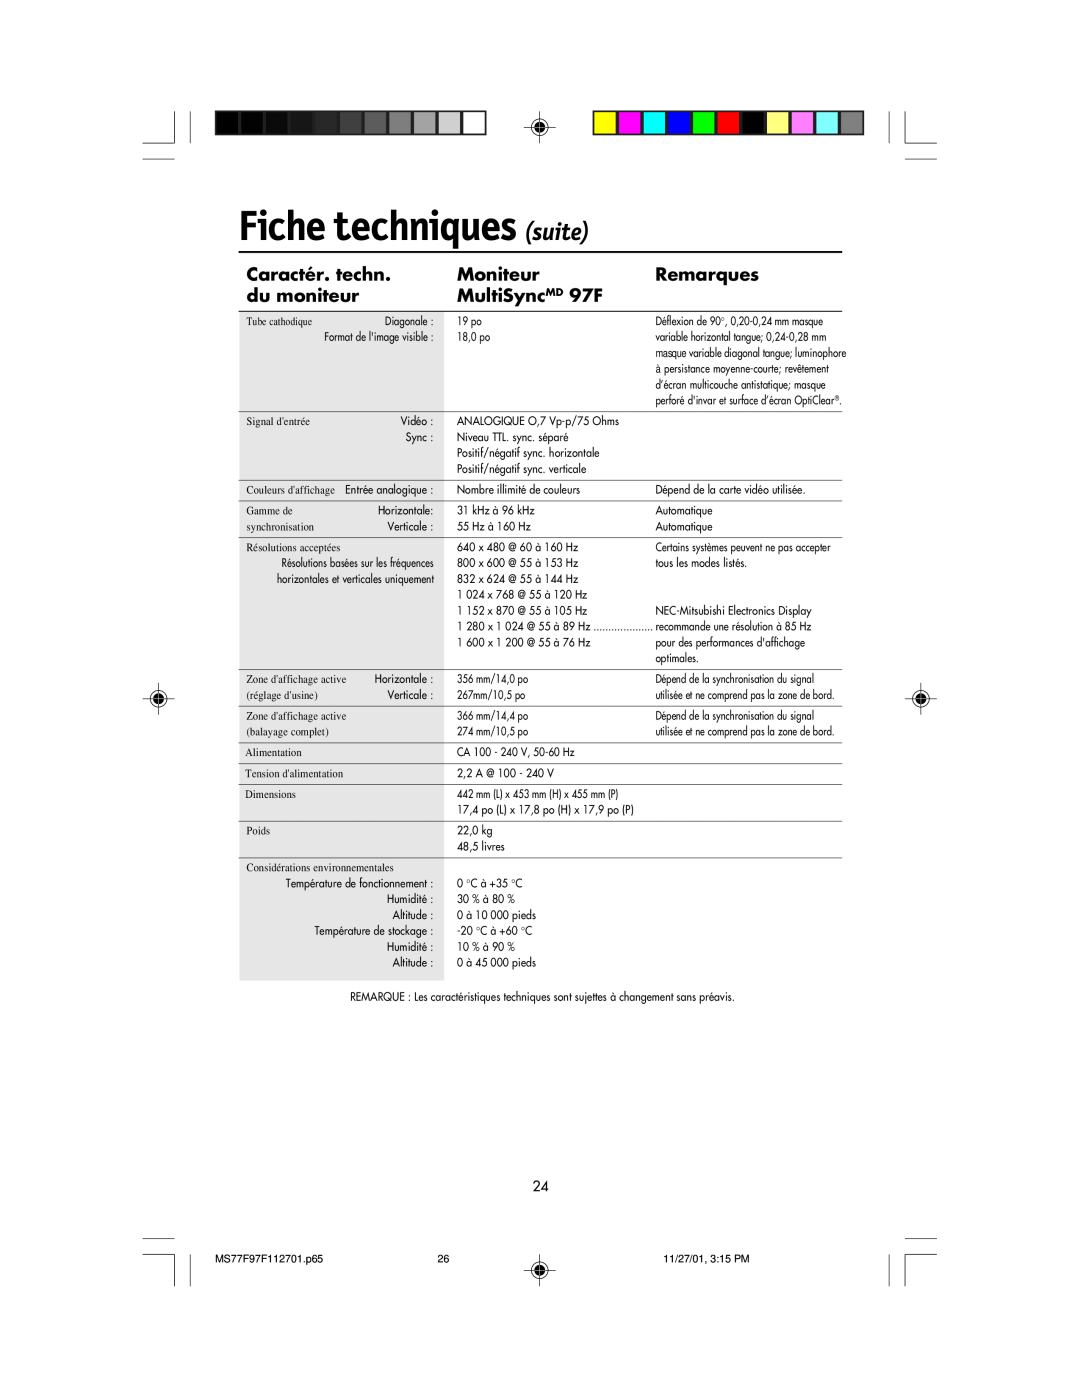 NEC 77F manual Fiche techniques suite, MultiSyncMD 97F, Caractér. techn, Moniteur, Remarques, du moniteur 